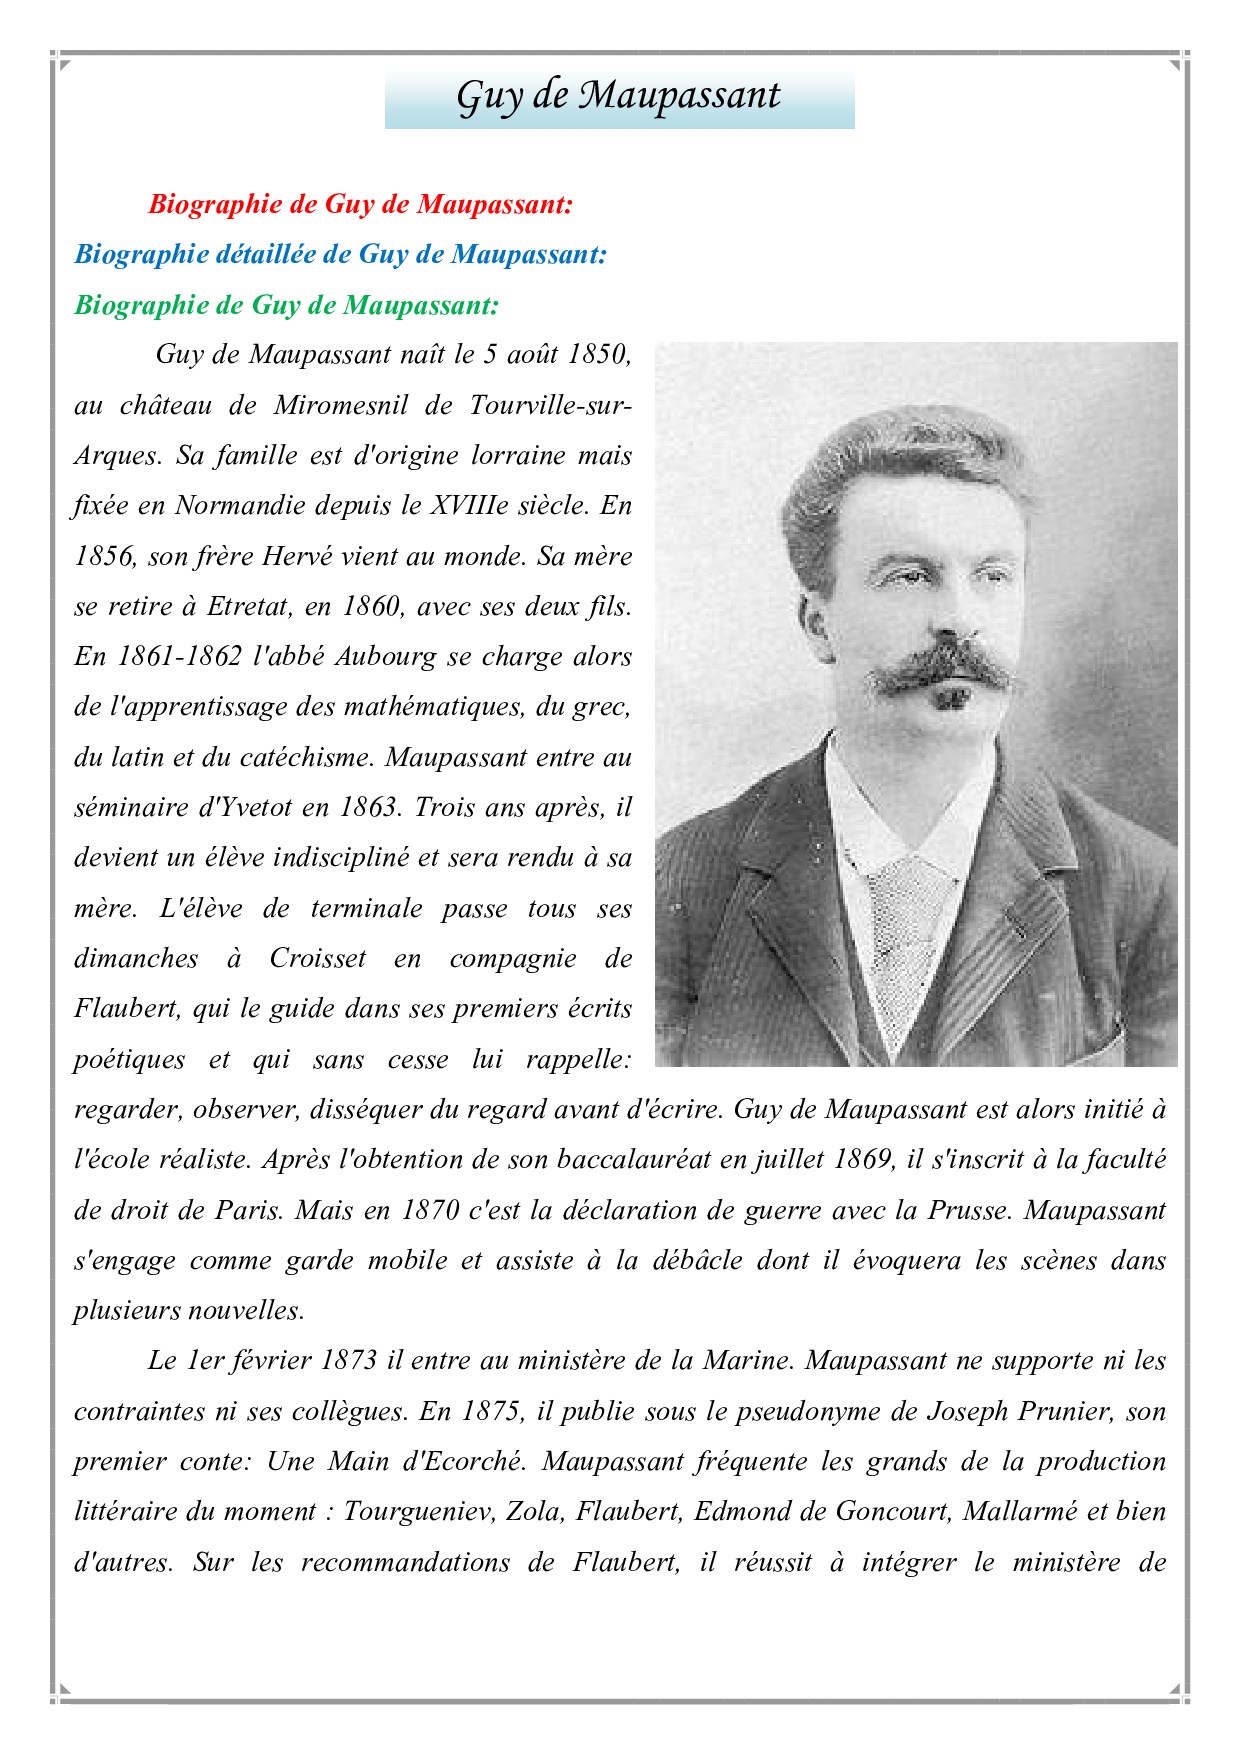 biography of guy de maupassant pdf